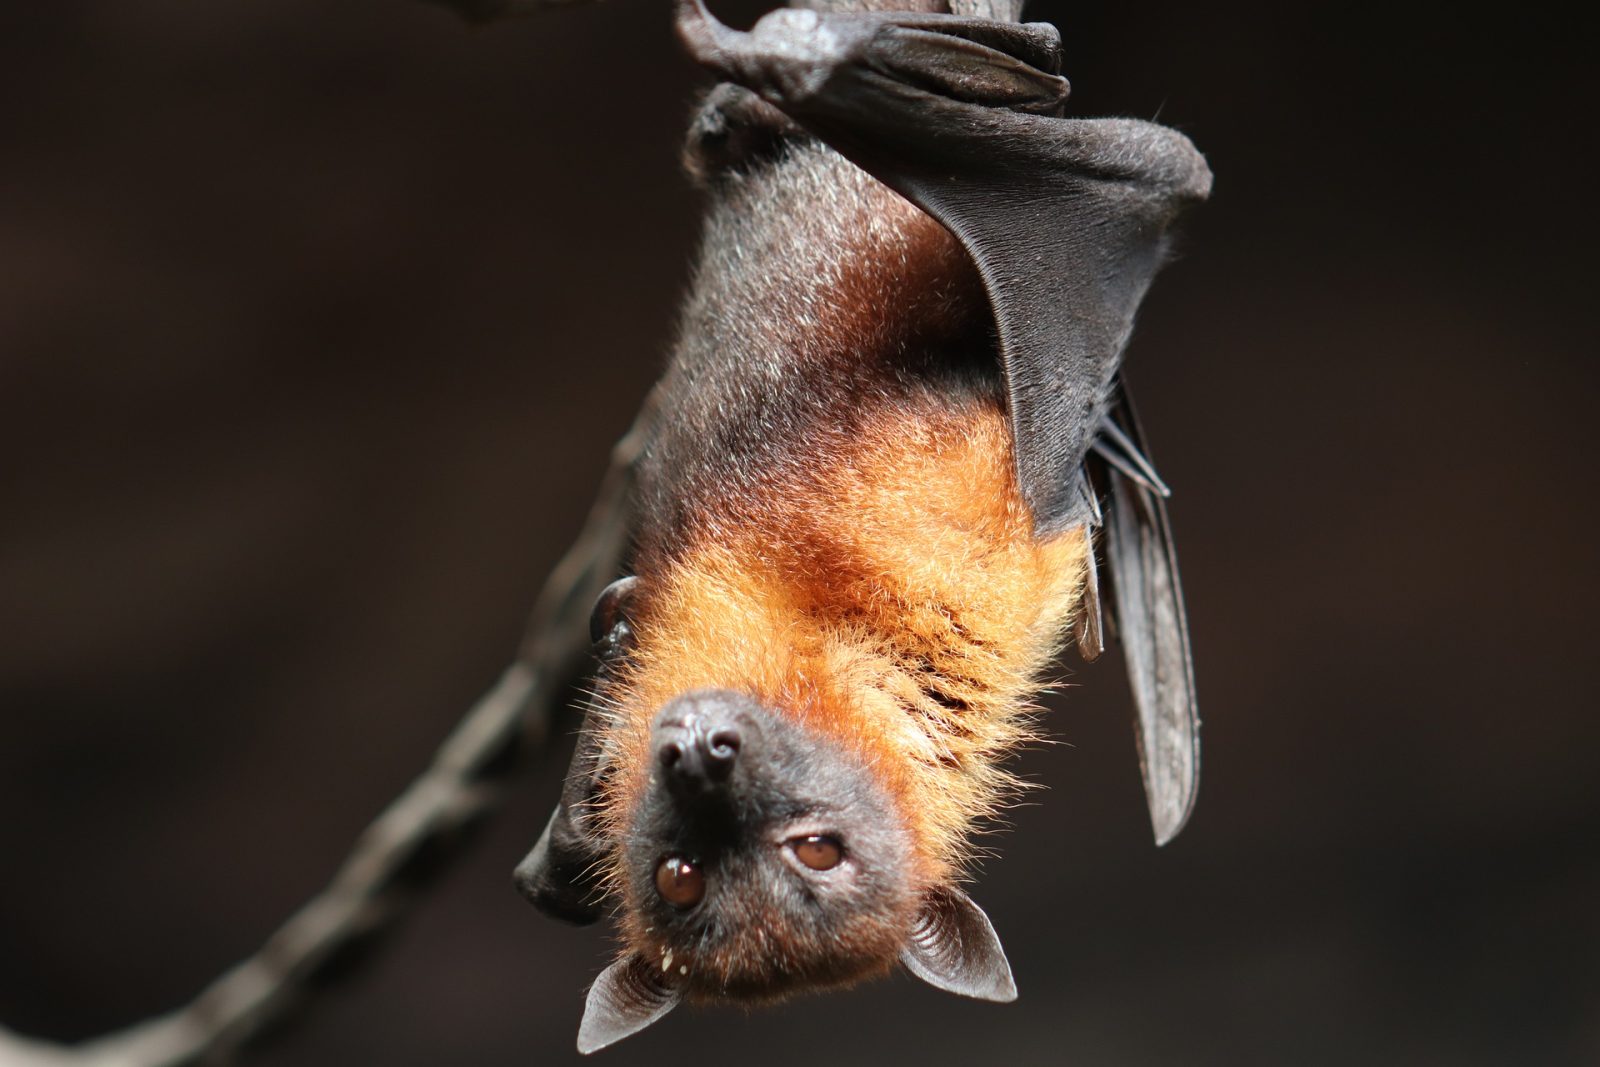 Bat rabies alert issued